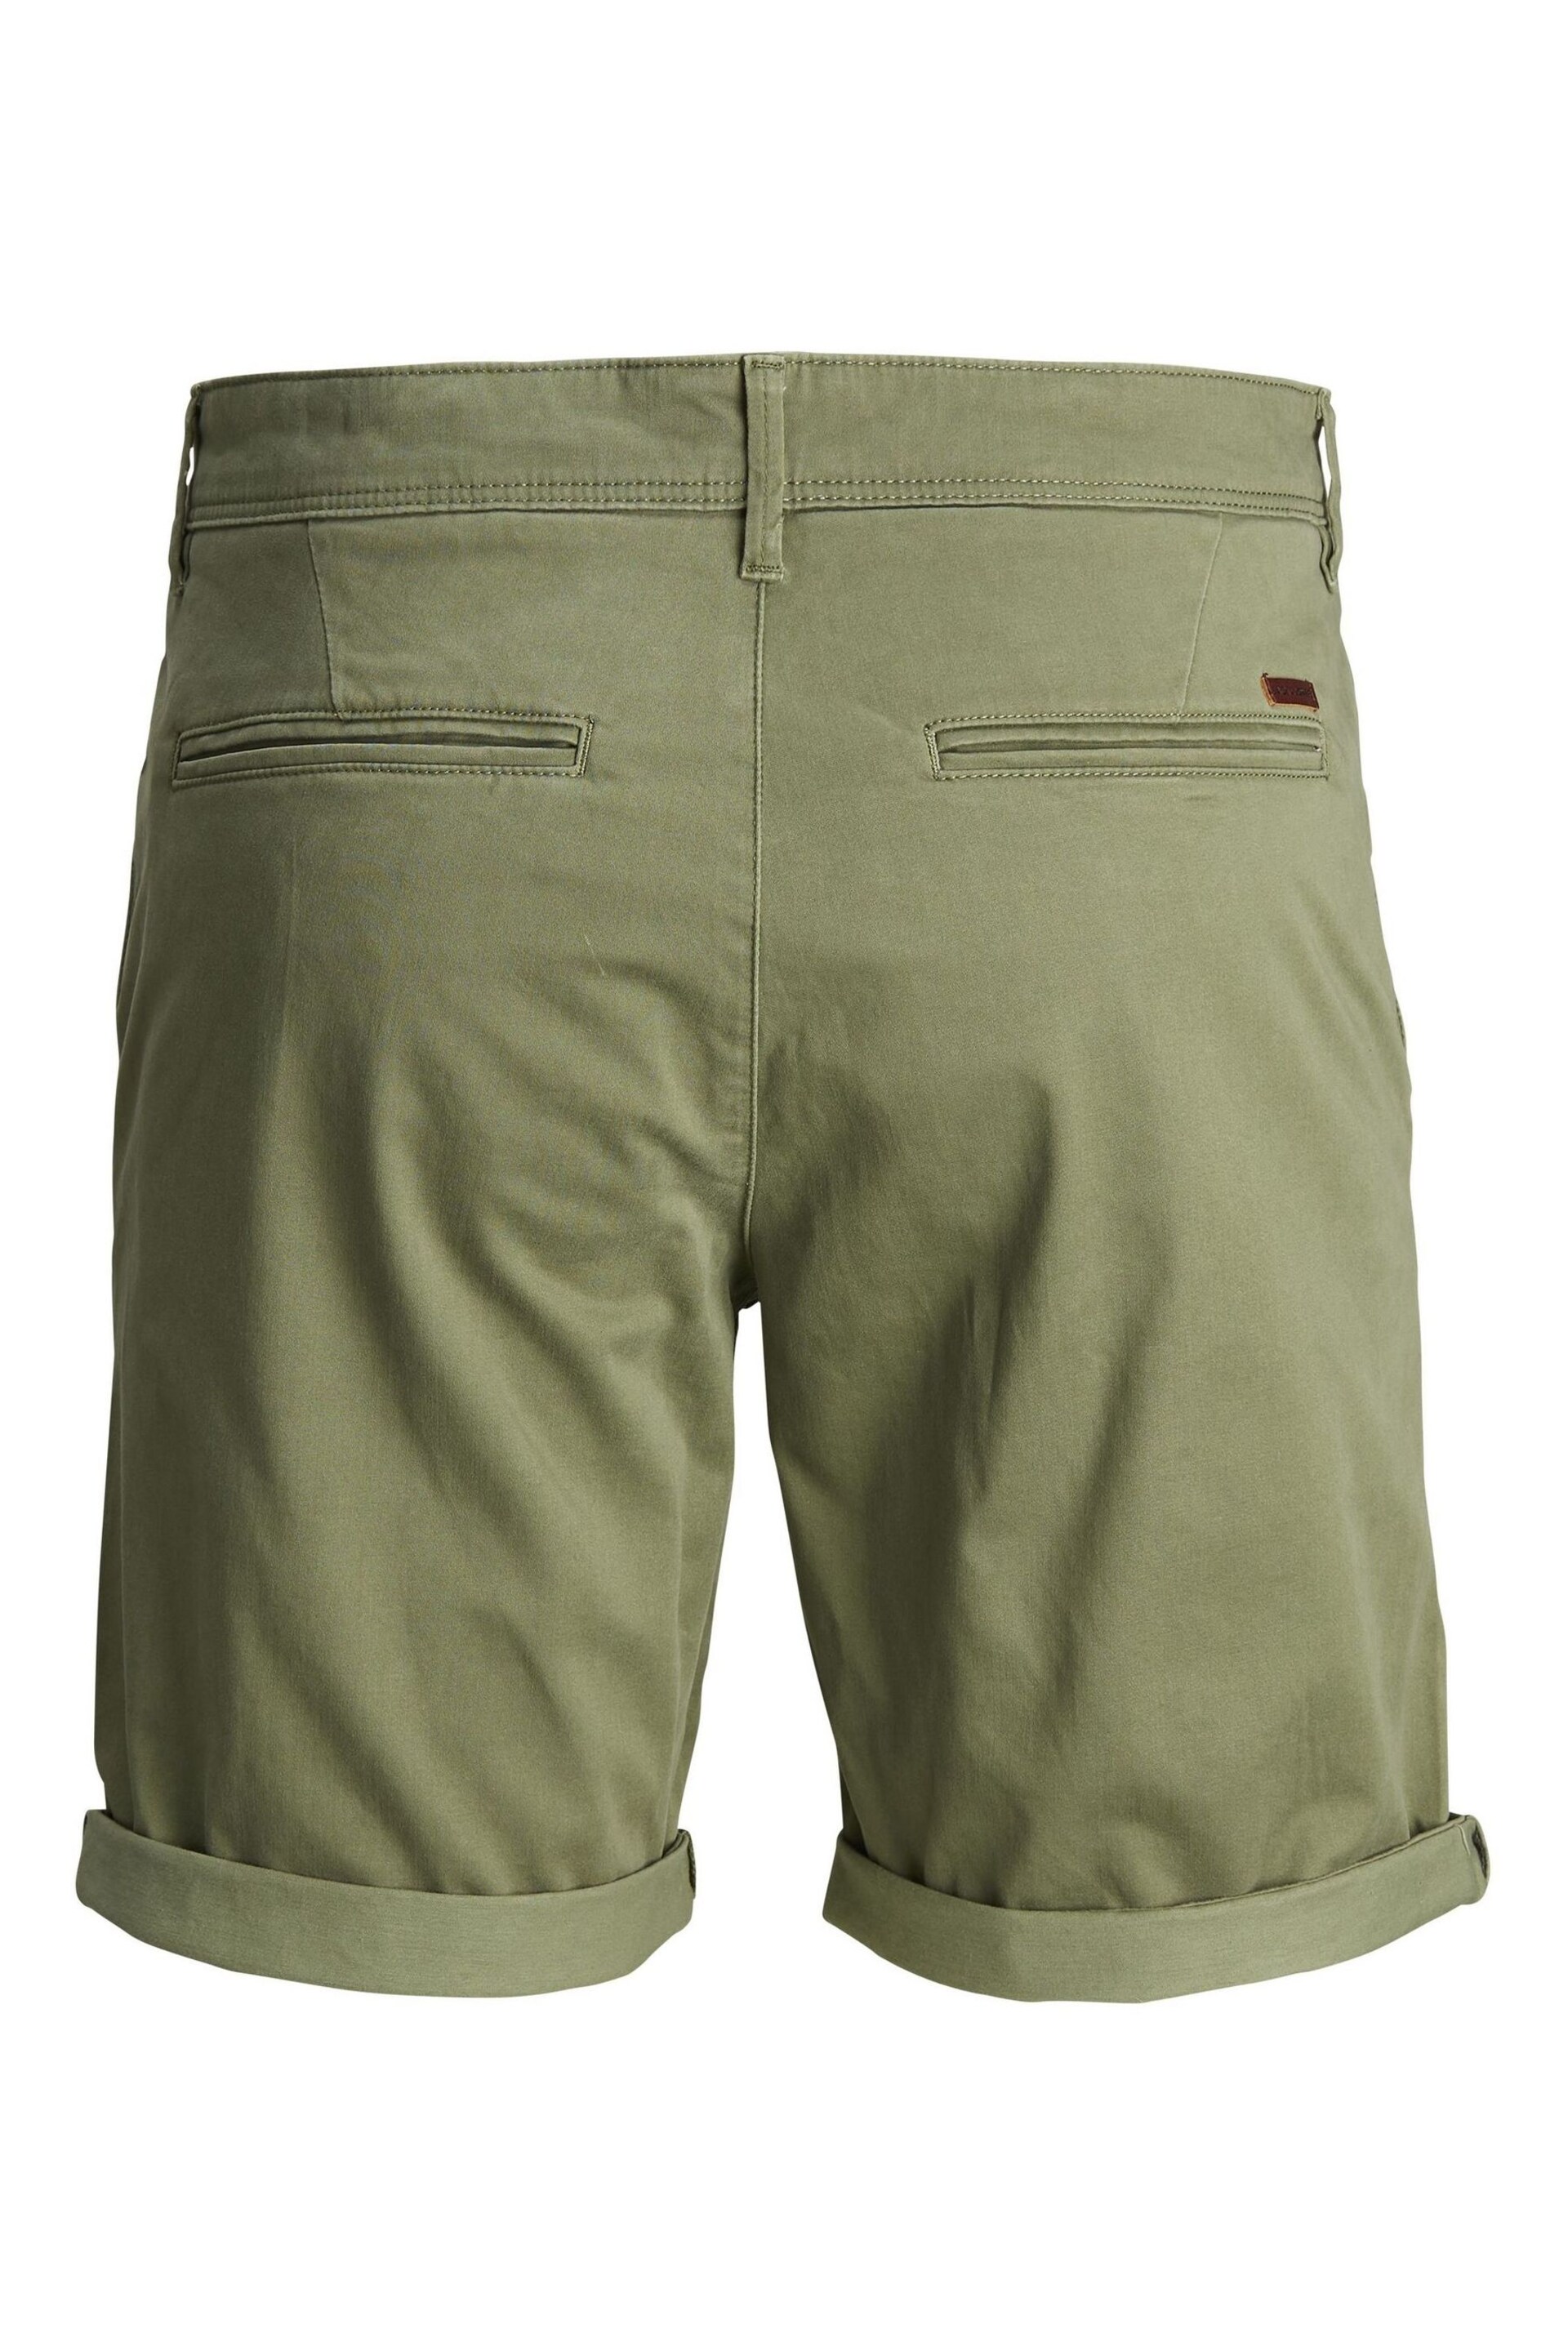 JACK & JONES Green Slim Chino Shorts - Image 7 of 7